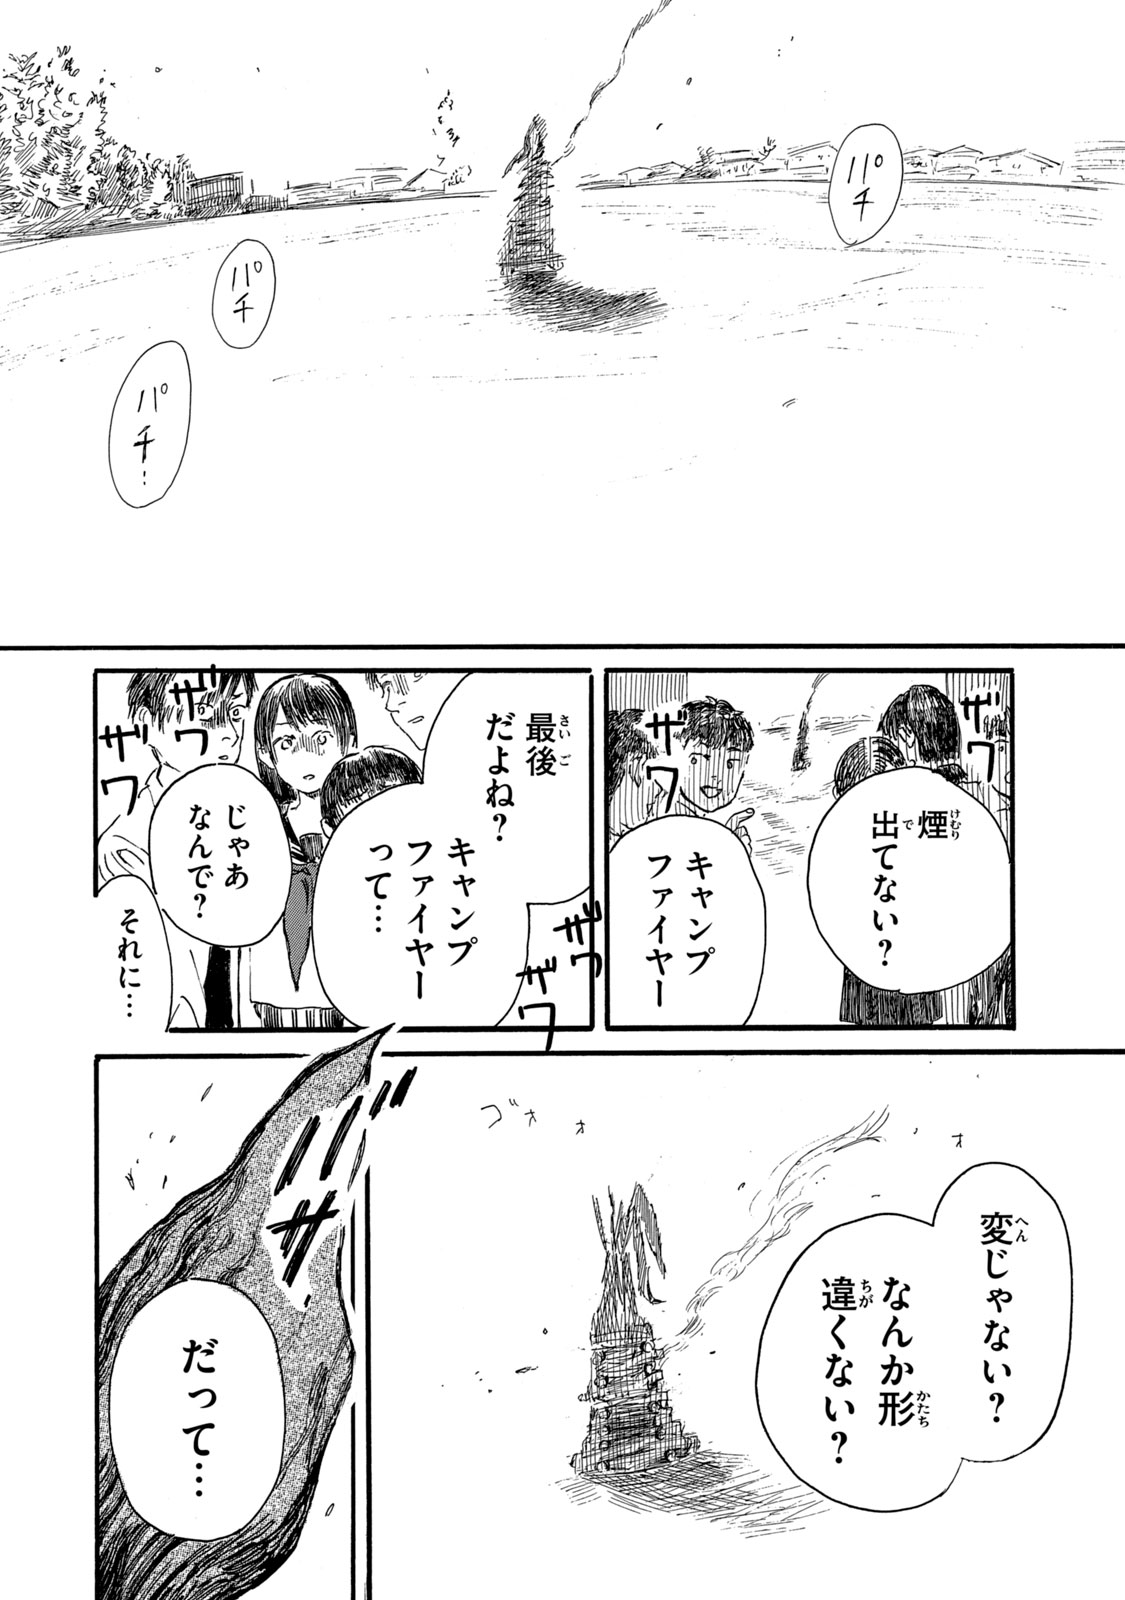 Watashi no Hara no Naka no Bakemono - Chapter 9 - Page 4